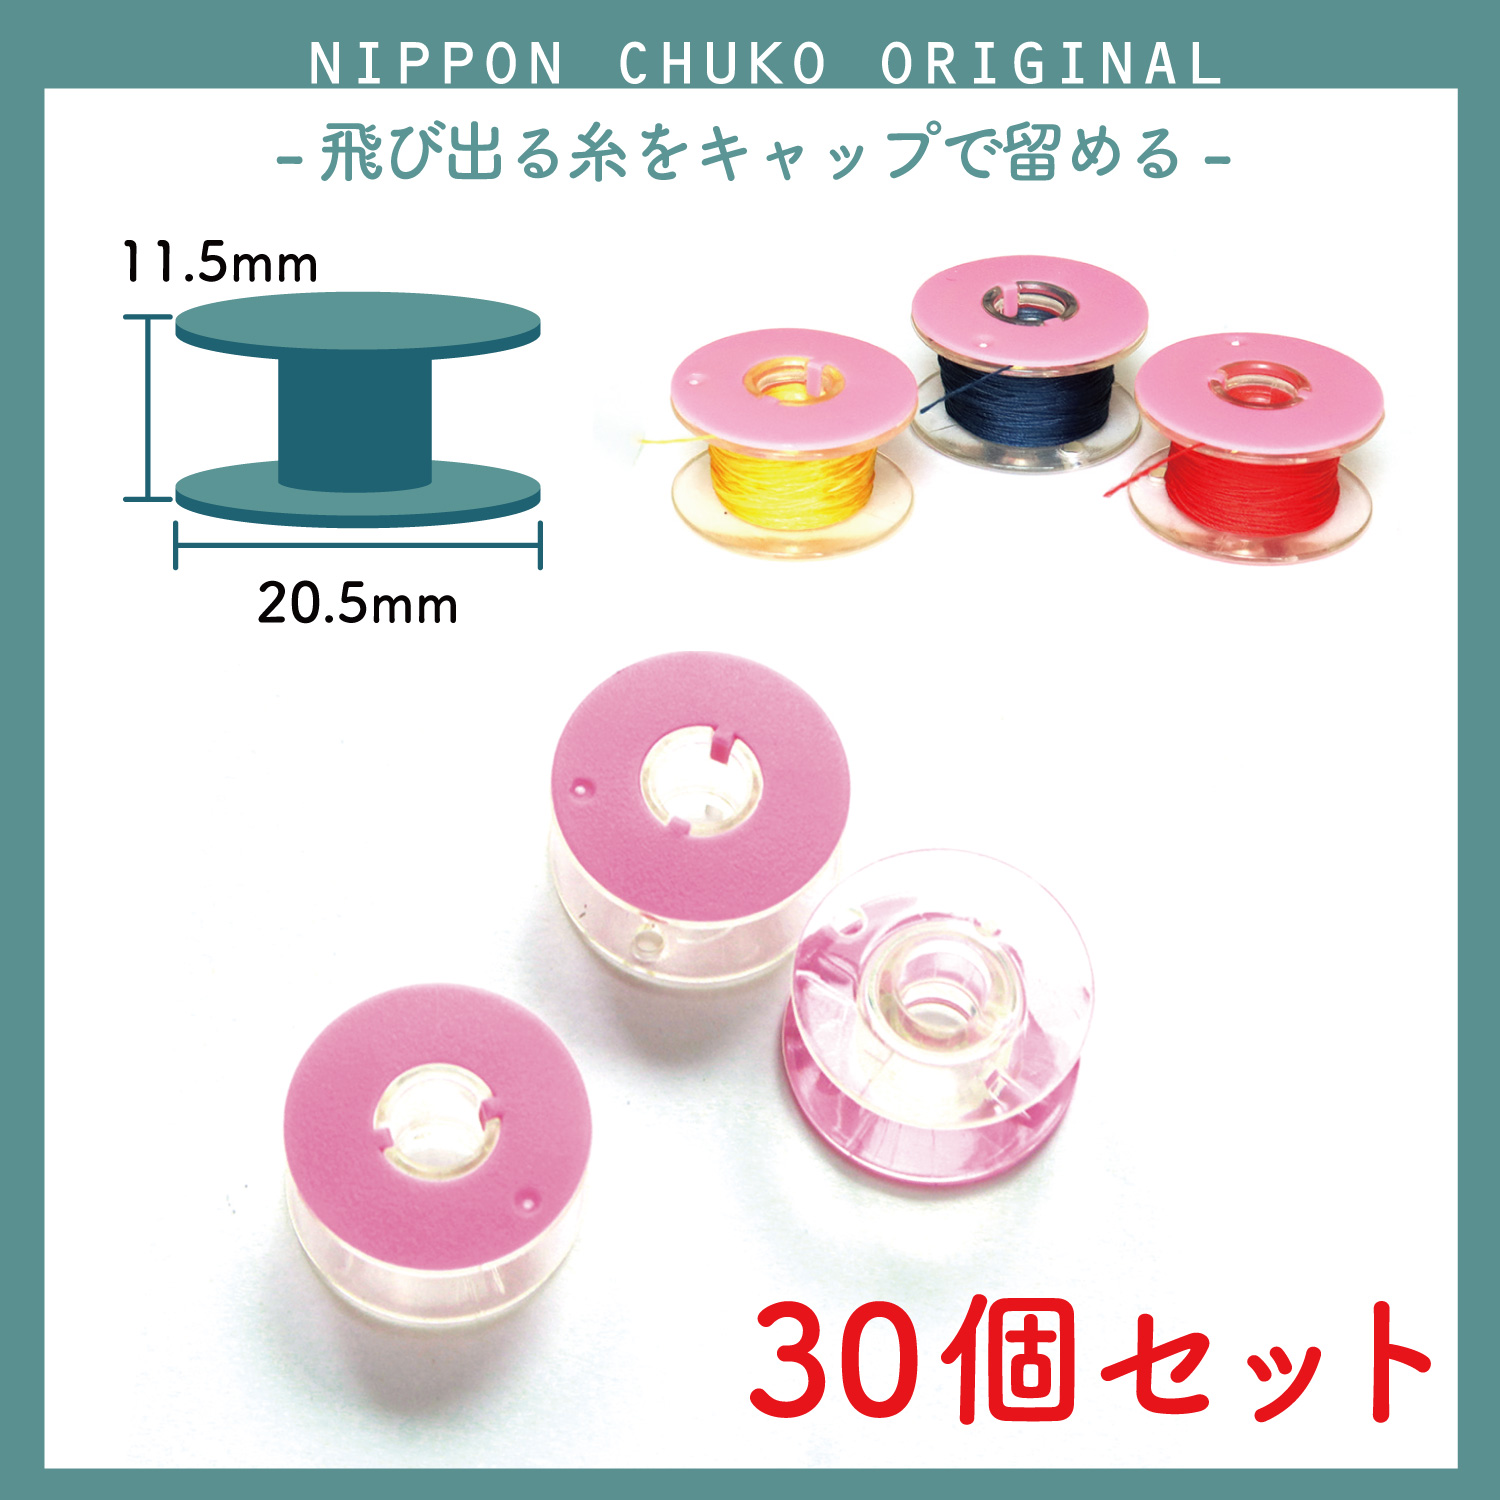 NI-02511-5 【家庭用】キャップ付きボビン 3個入×5袋セット (セット)